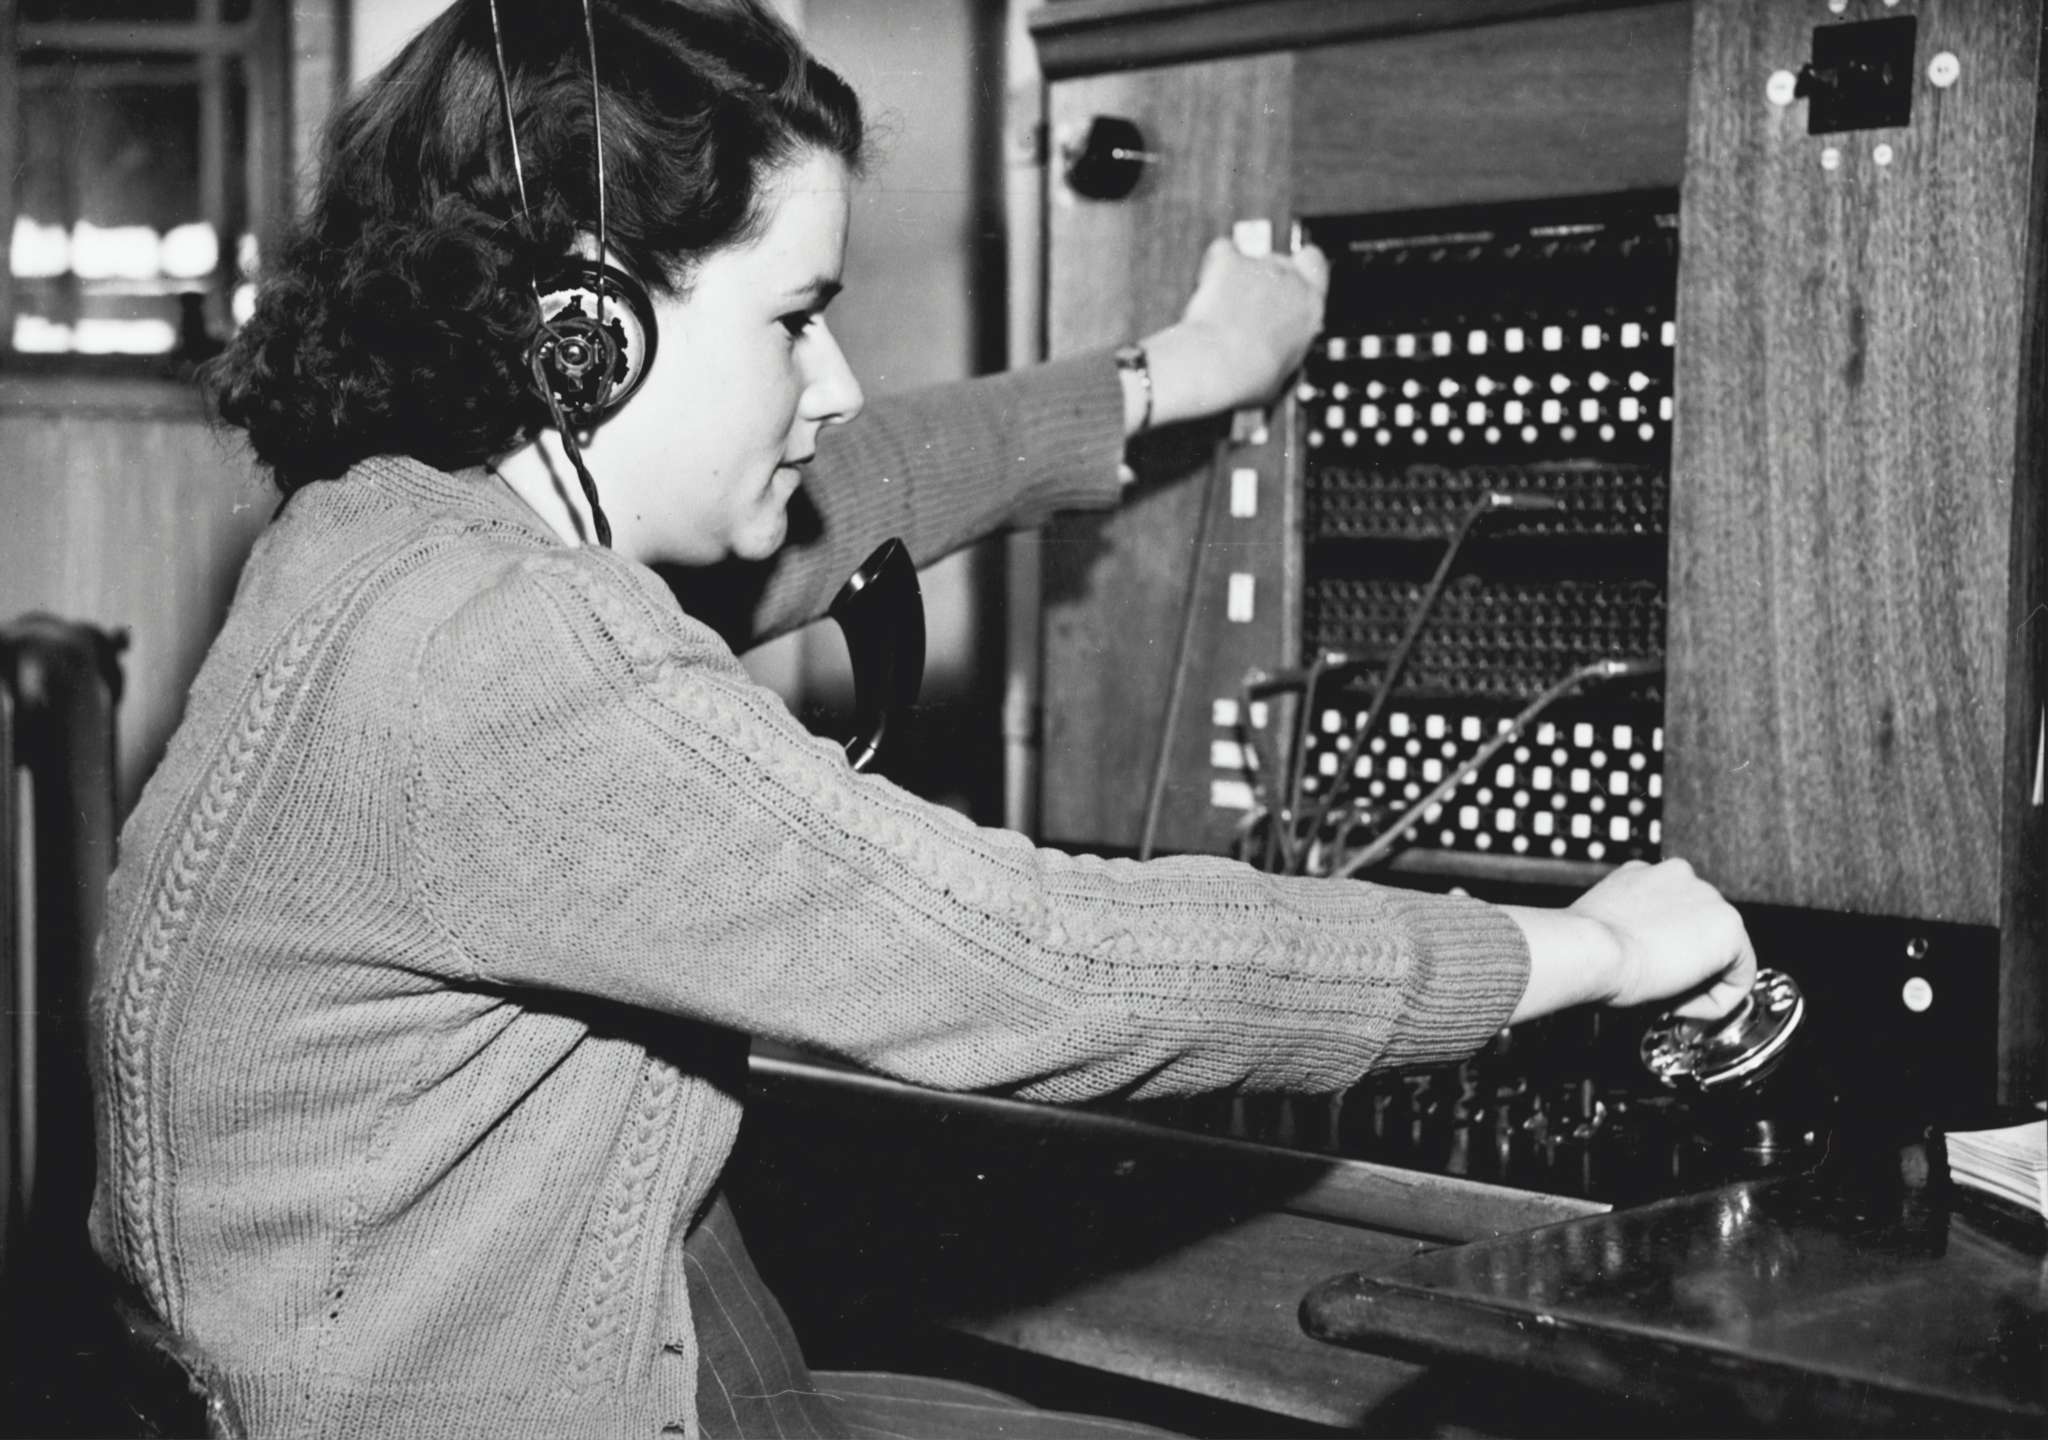 Historische foto van telefoniste van Museums Victoria via Unsplash.